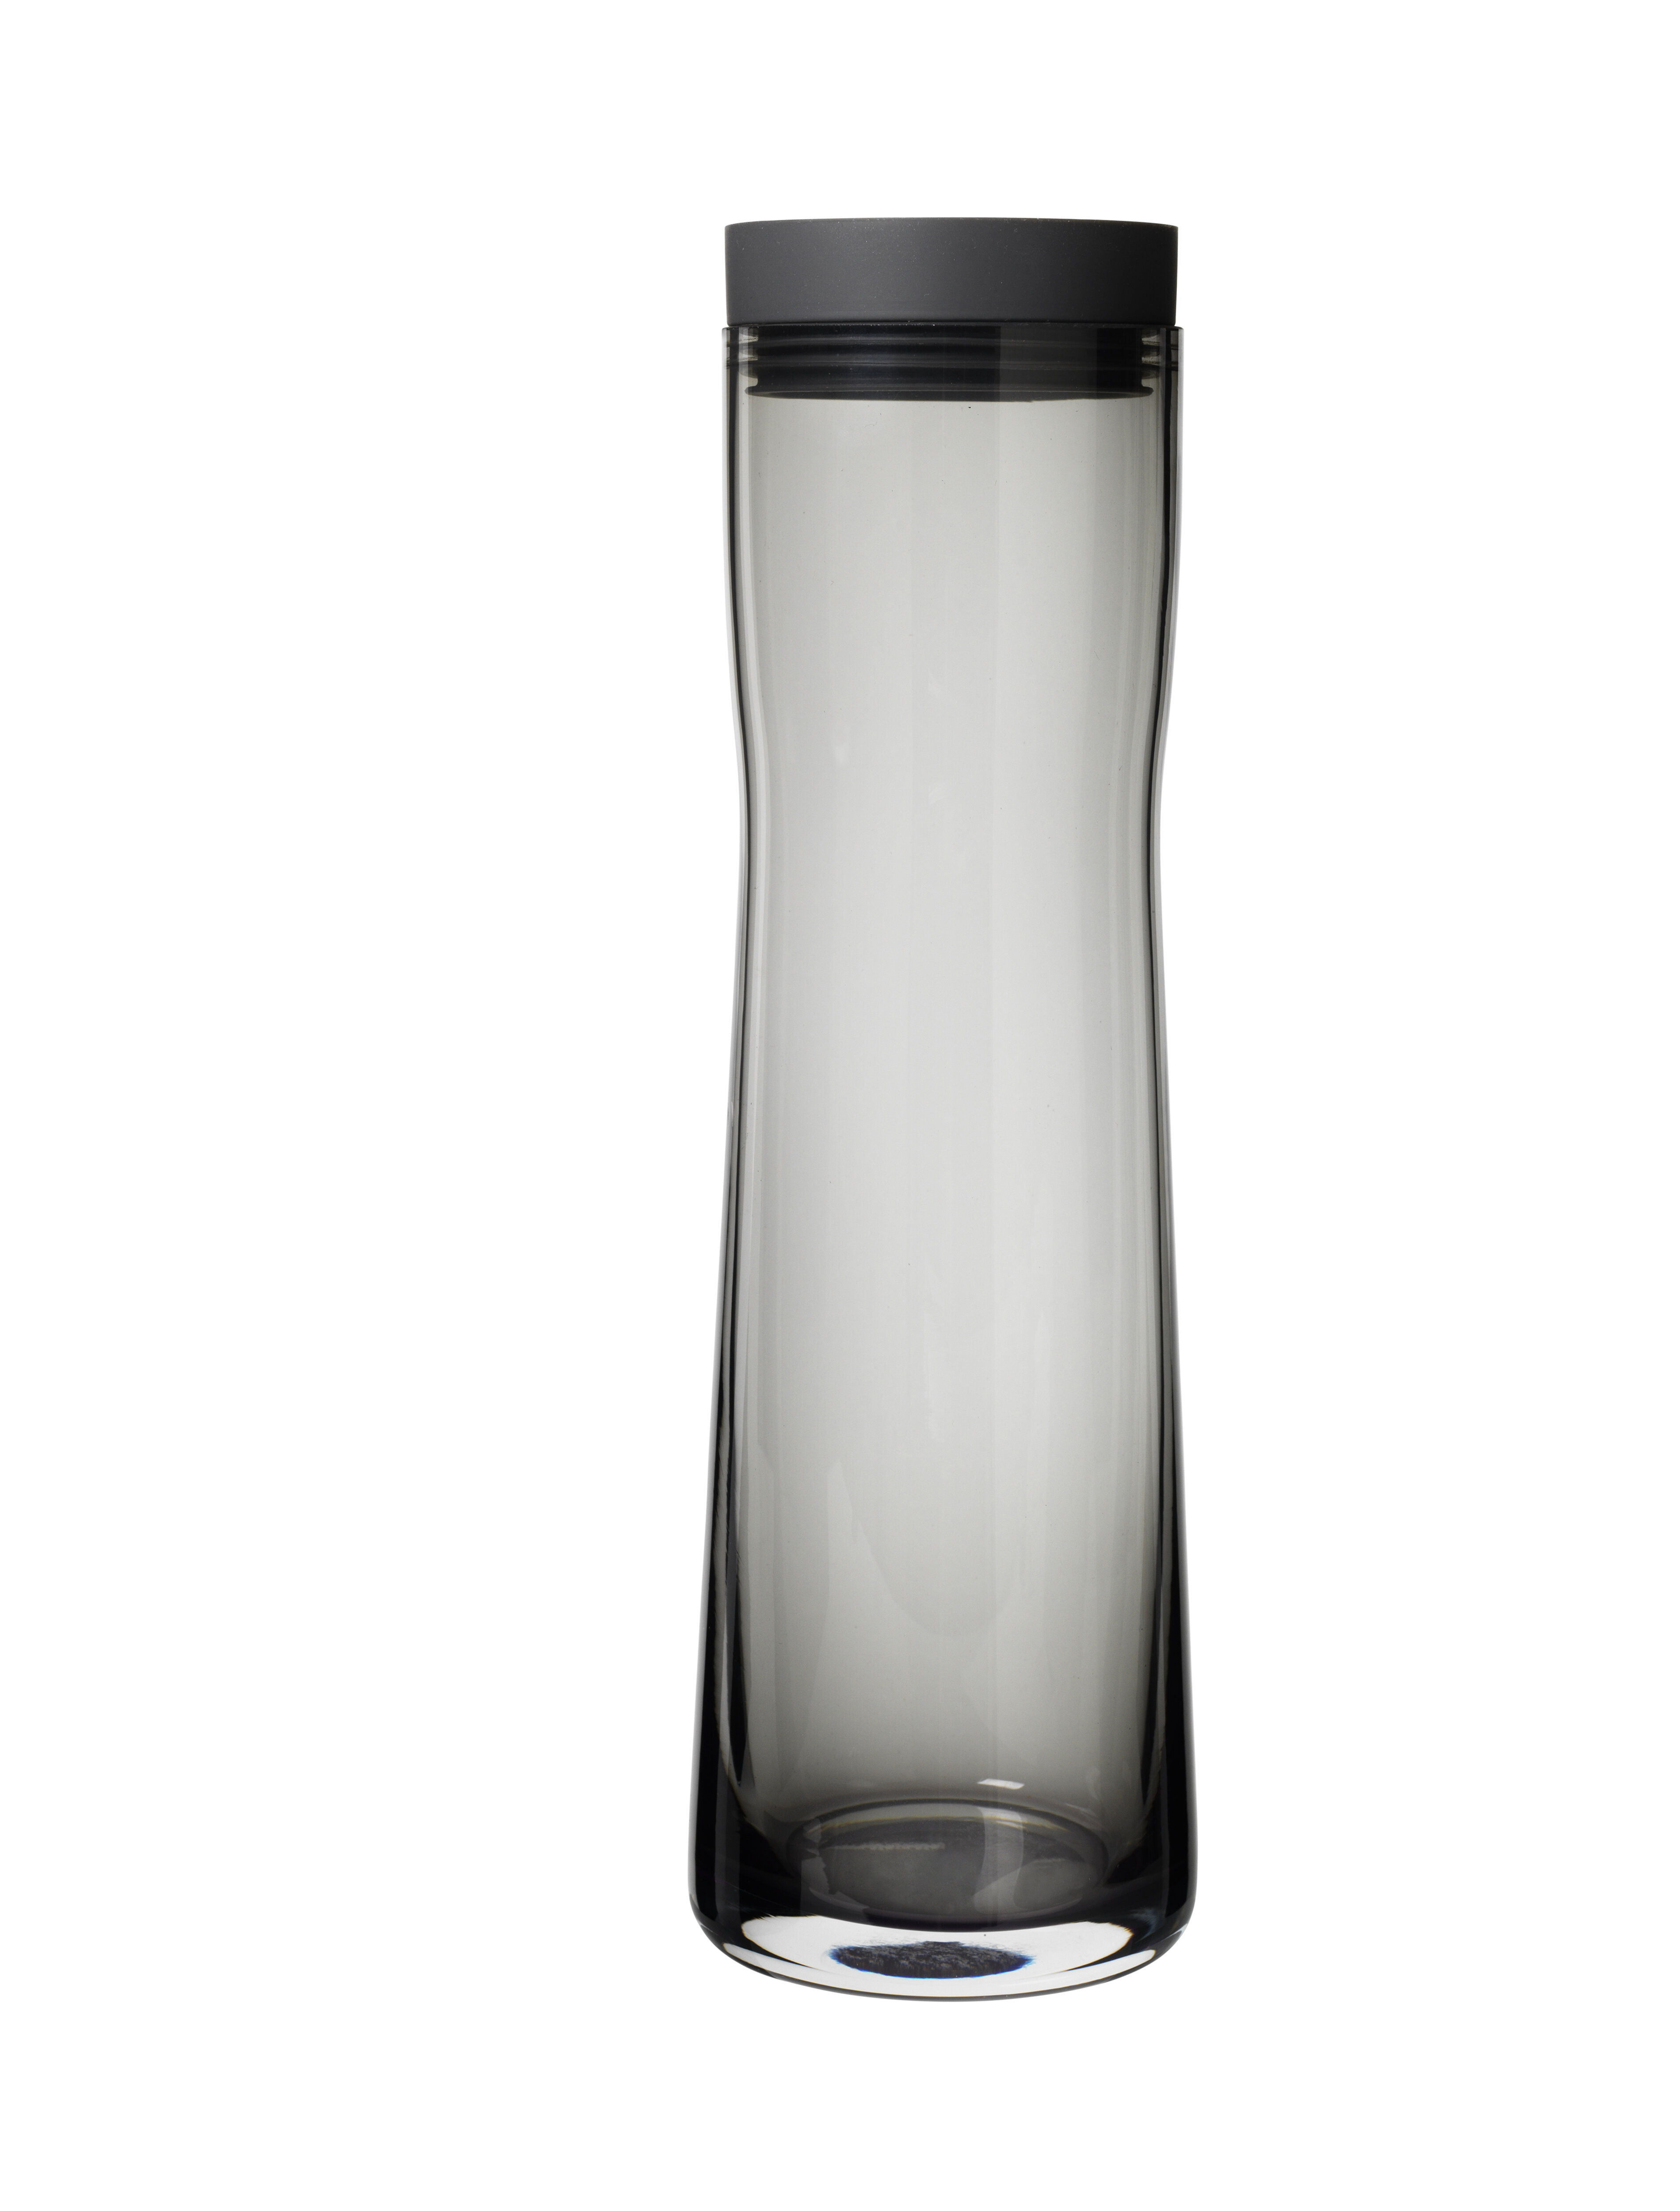 Glass Juice Water Carafe 34OZ - 1 Liter